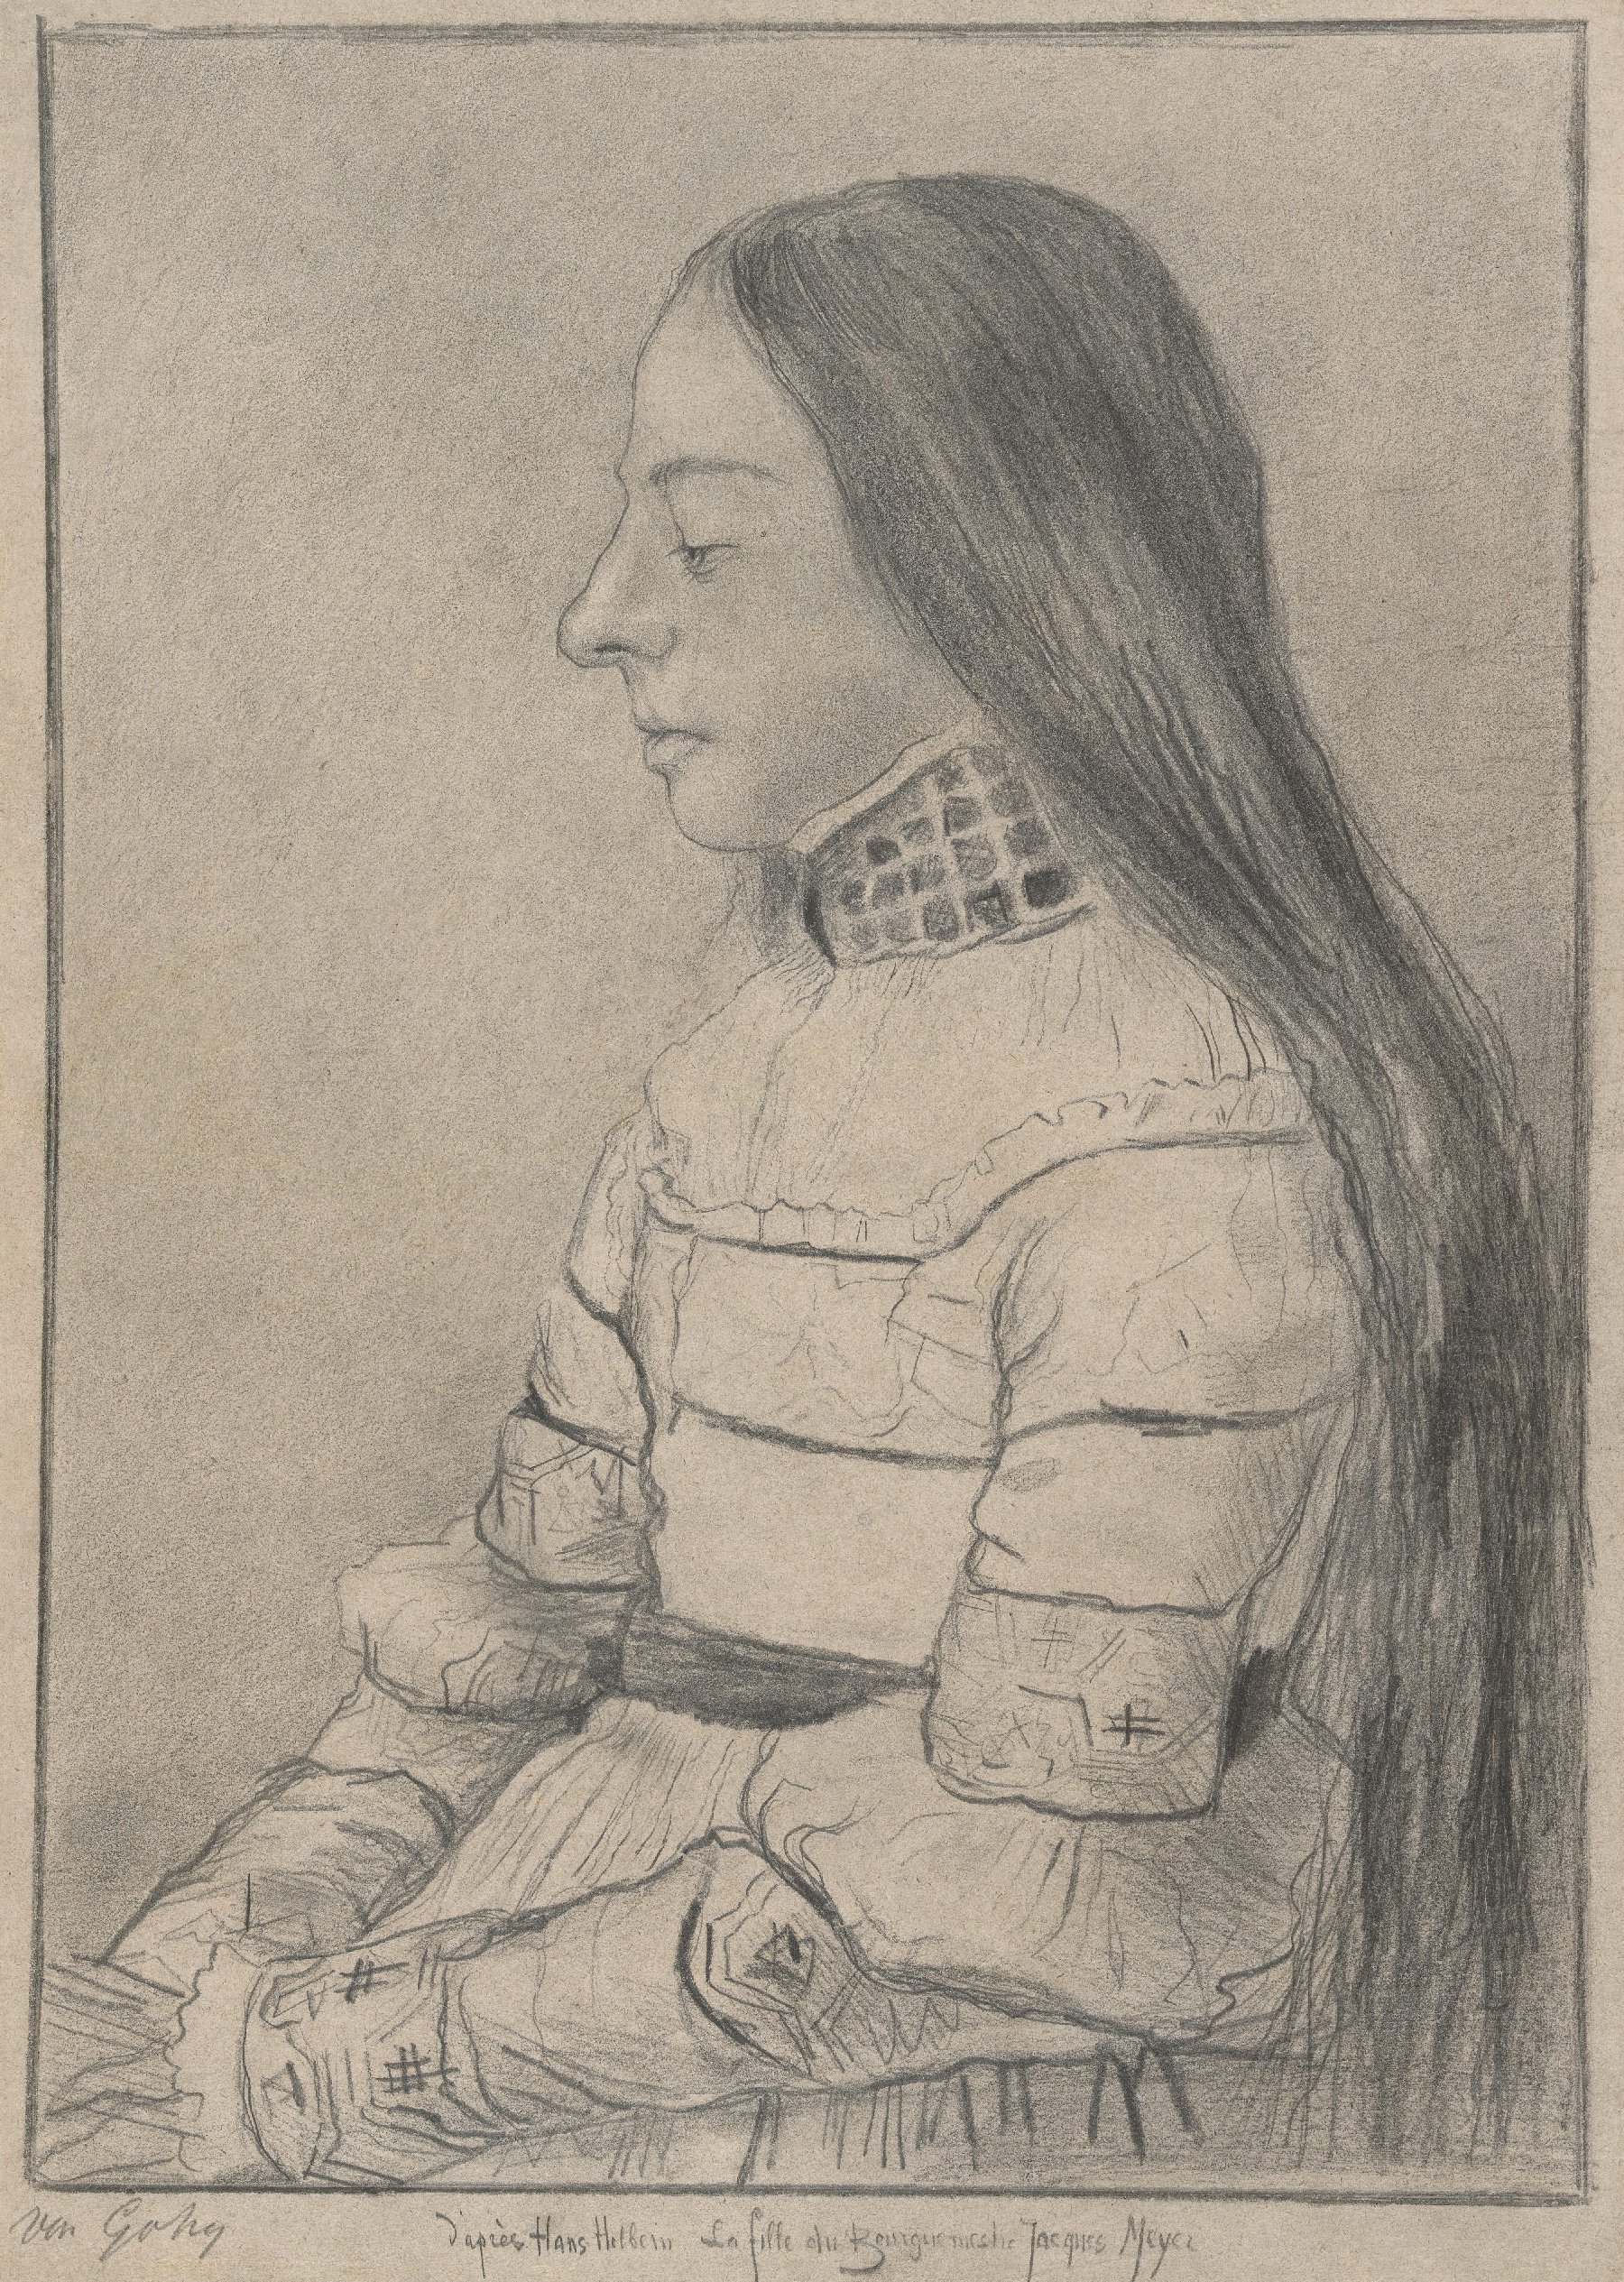 De dochter van Jacob Meyer (naar Bargue naar Holbein) Vincent van Gogh (1853 - 1890), Brussel, oktober 1880-april 1881